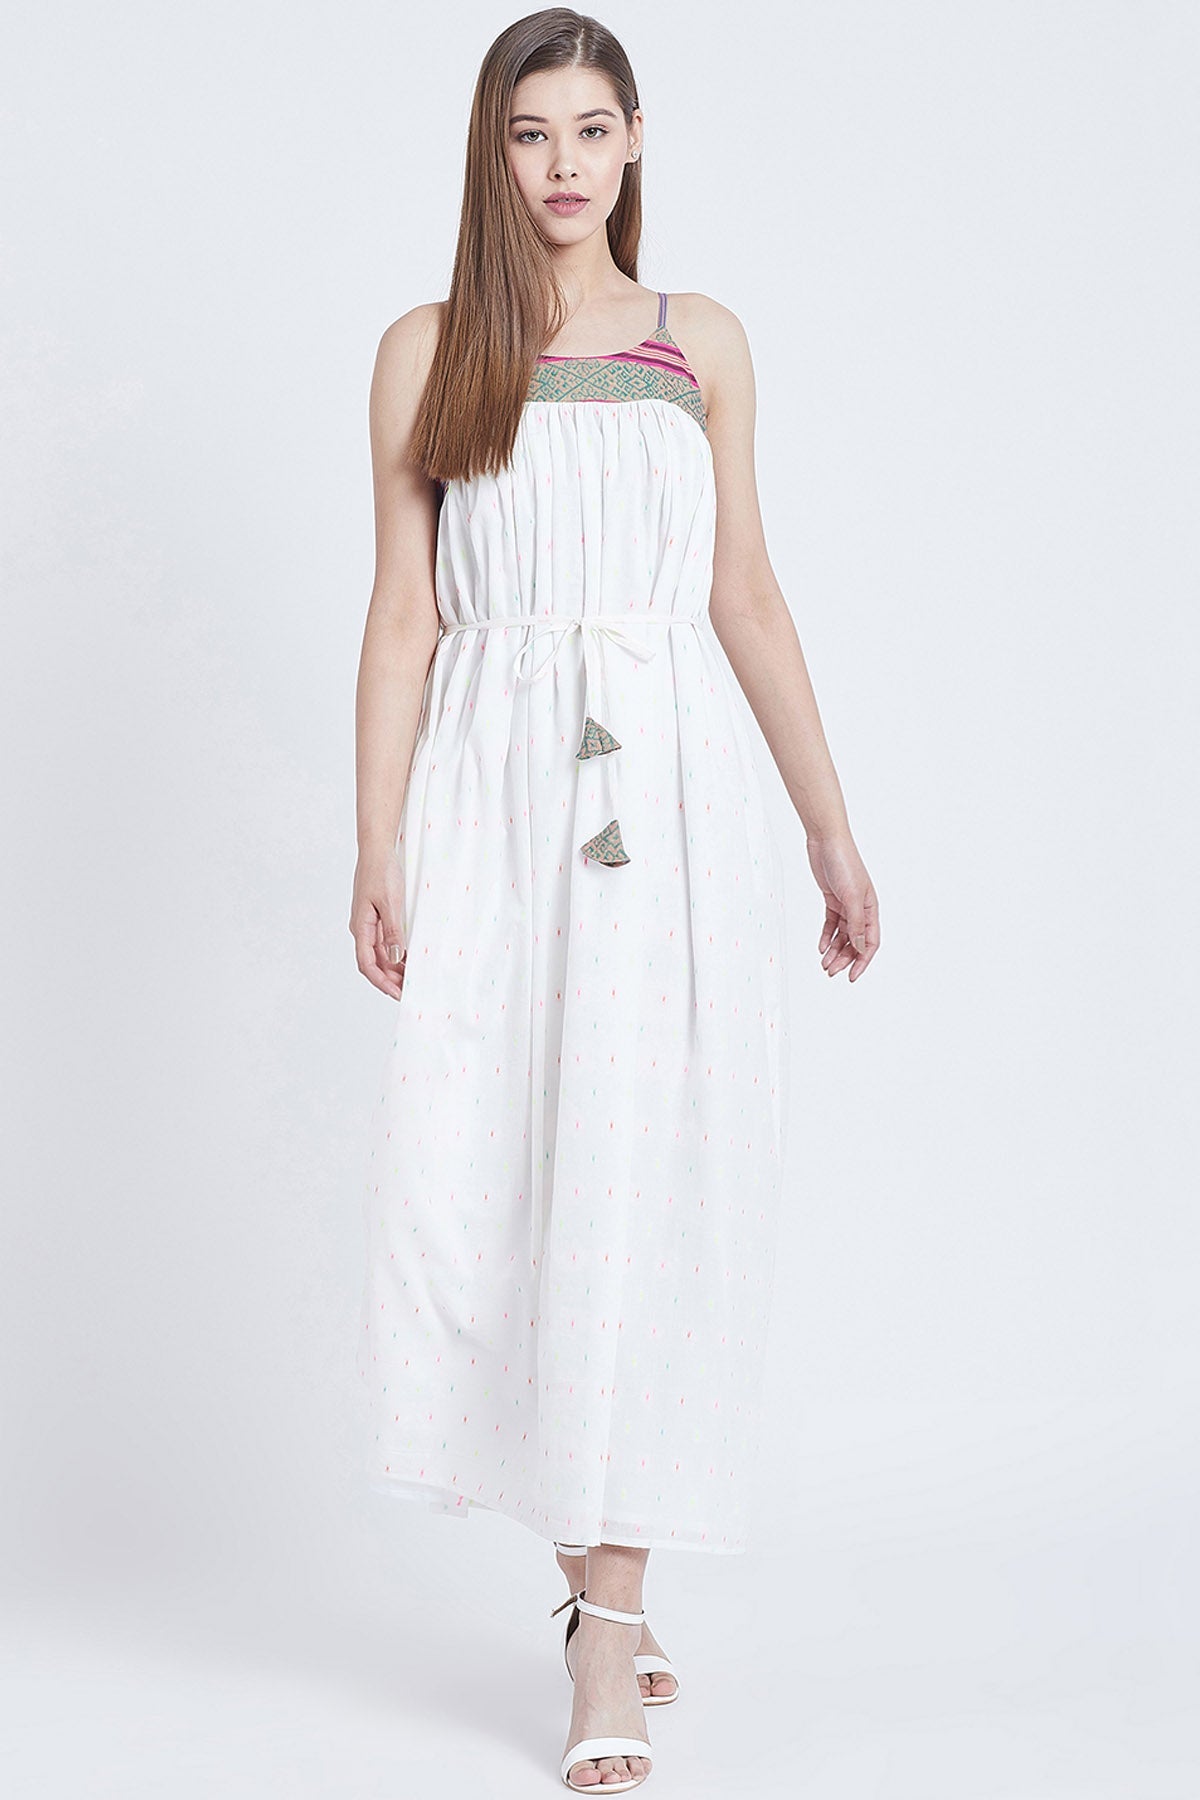 Bohobi White Cotton Sleeveless Dress For Women Online at ScrollnShops